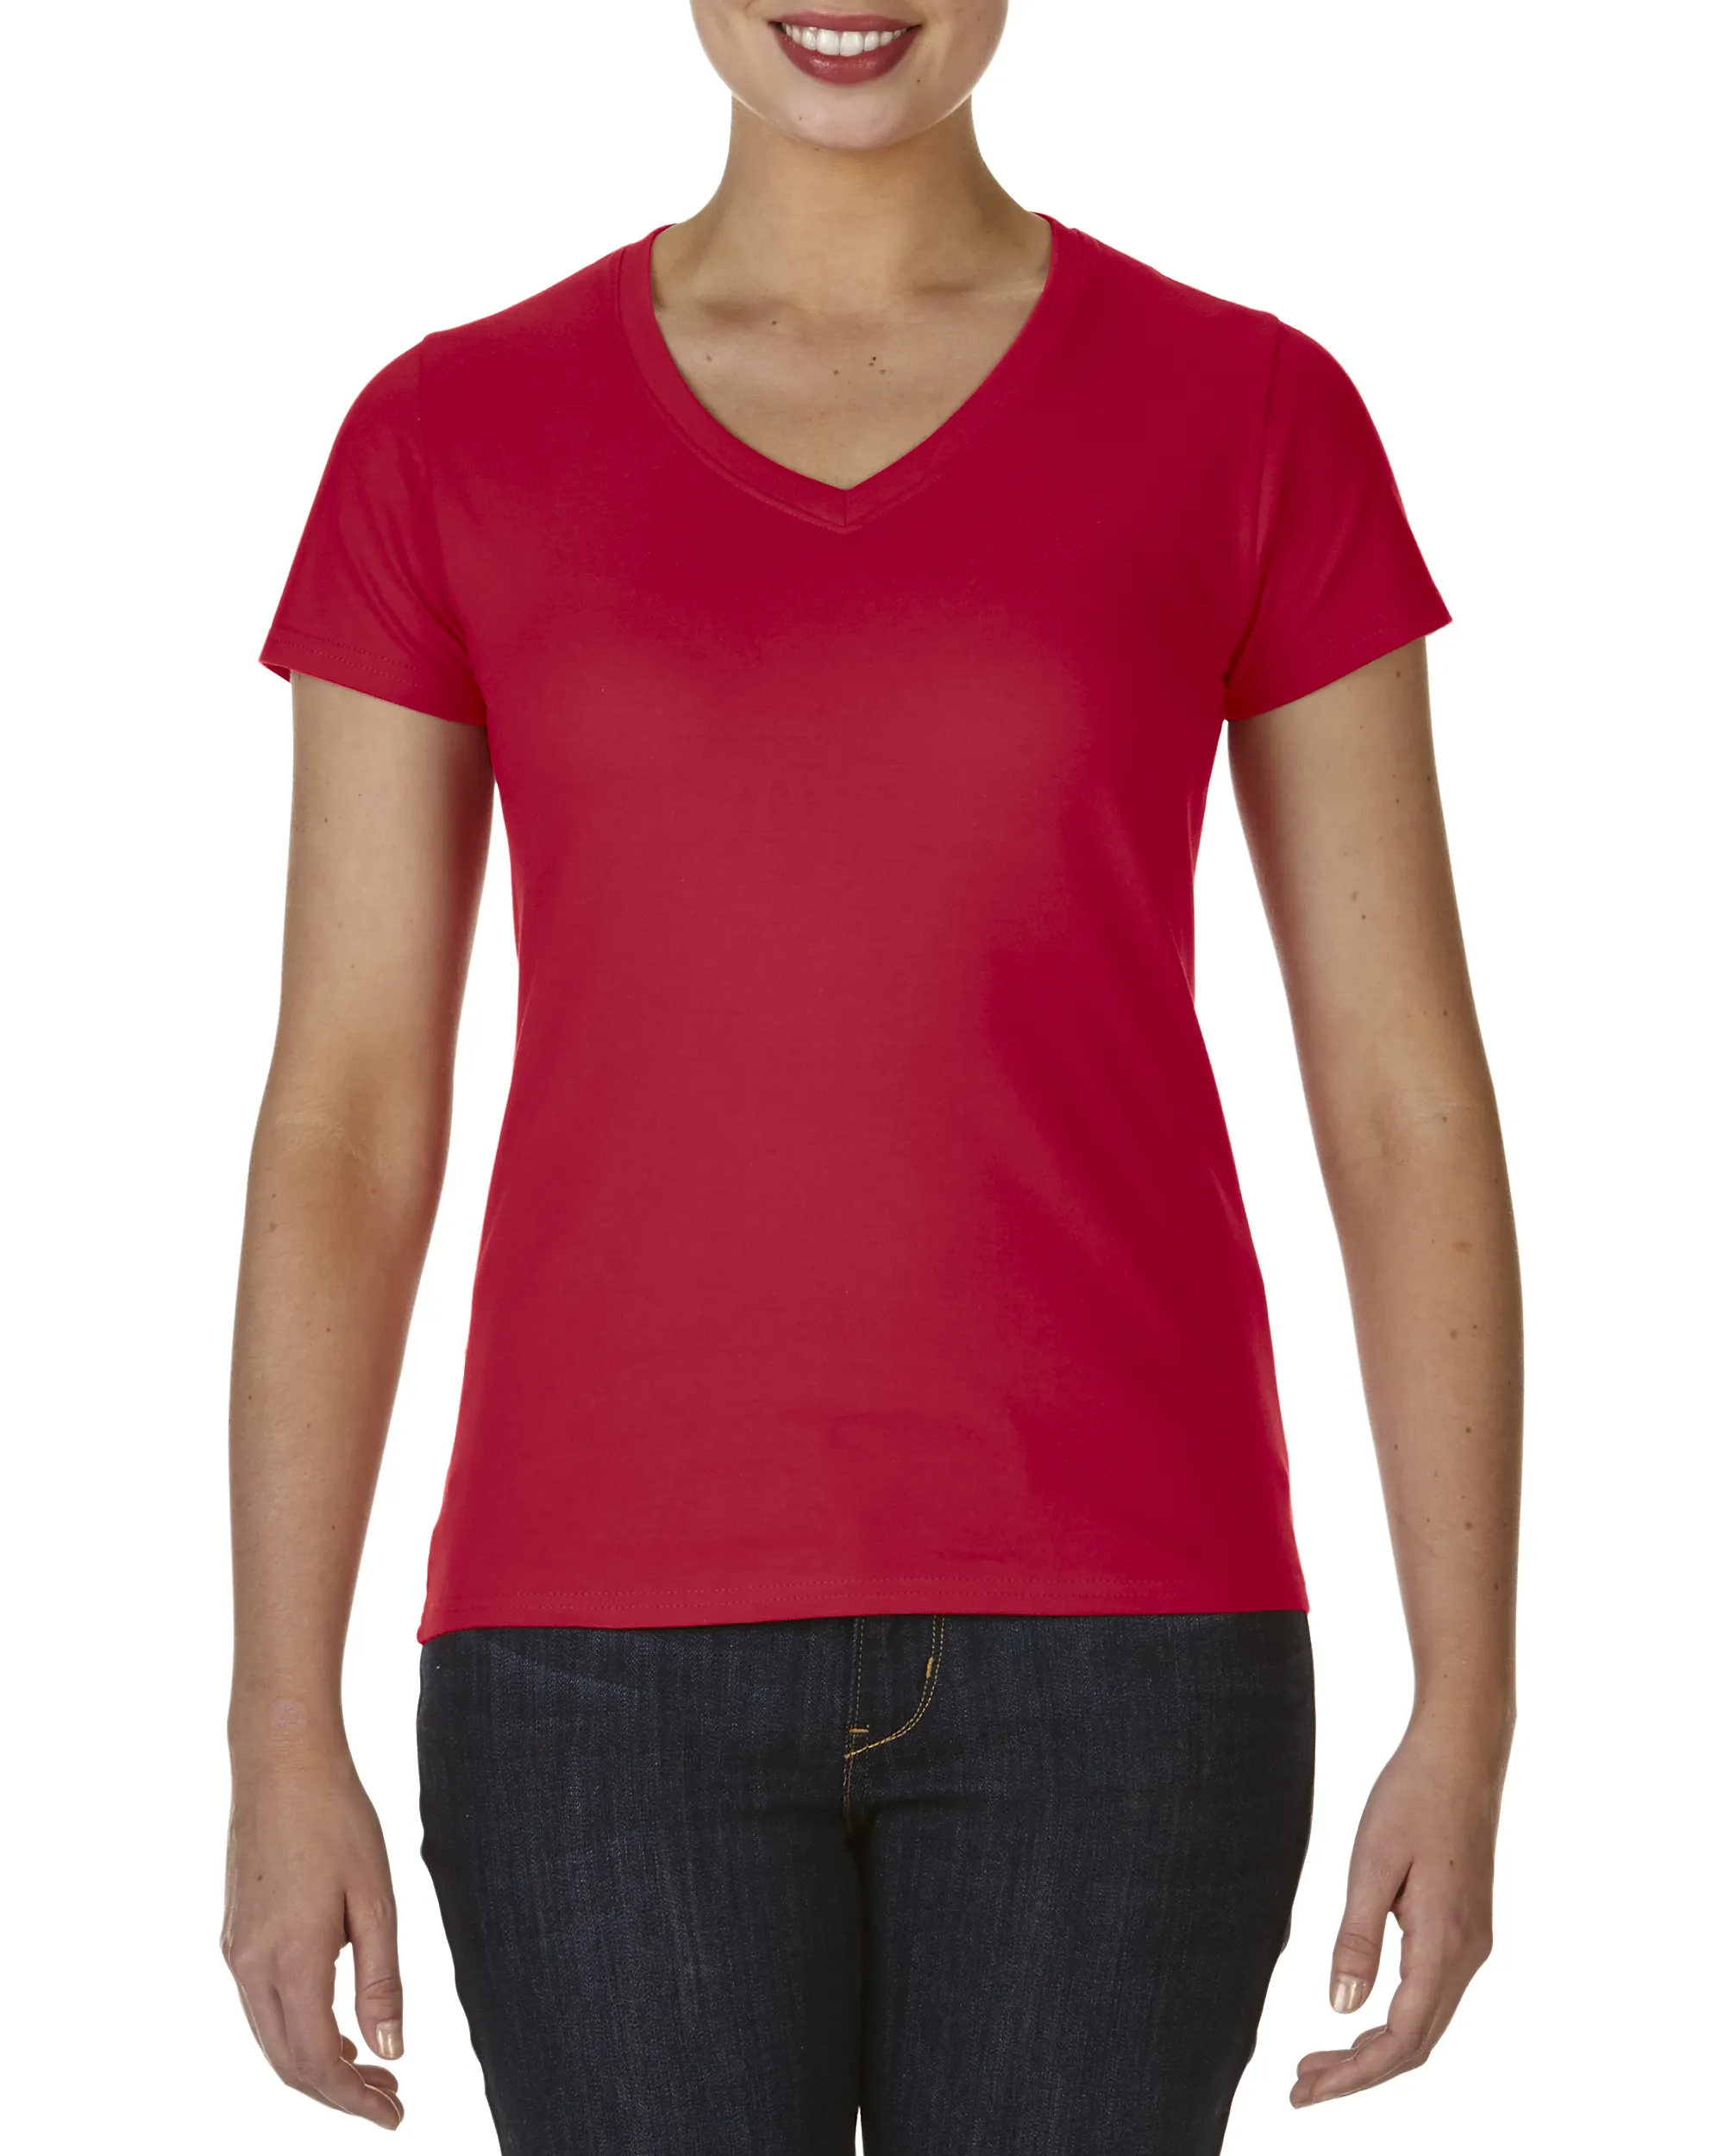 150g 순면 V-넥 일반 반팔 티셔츠 광고 티셔츠 의류 맞춤 인쇄 로고 티셔츠 여성 캐주얼